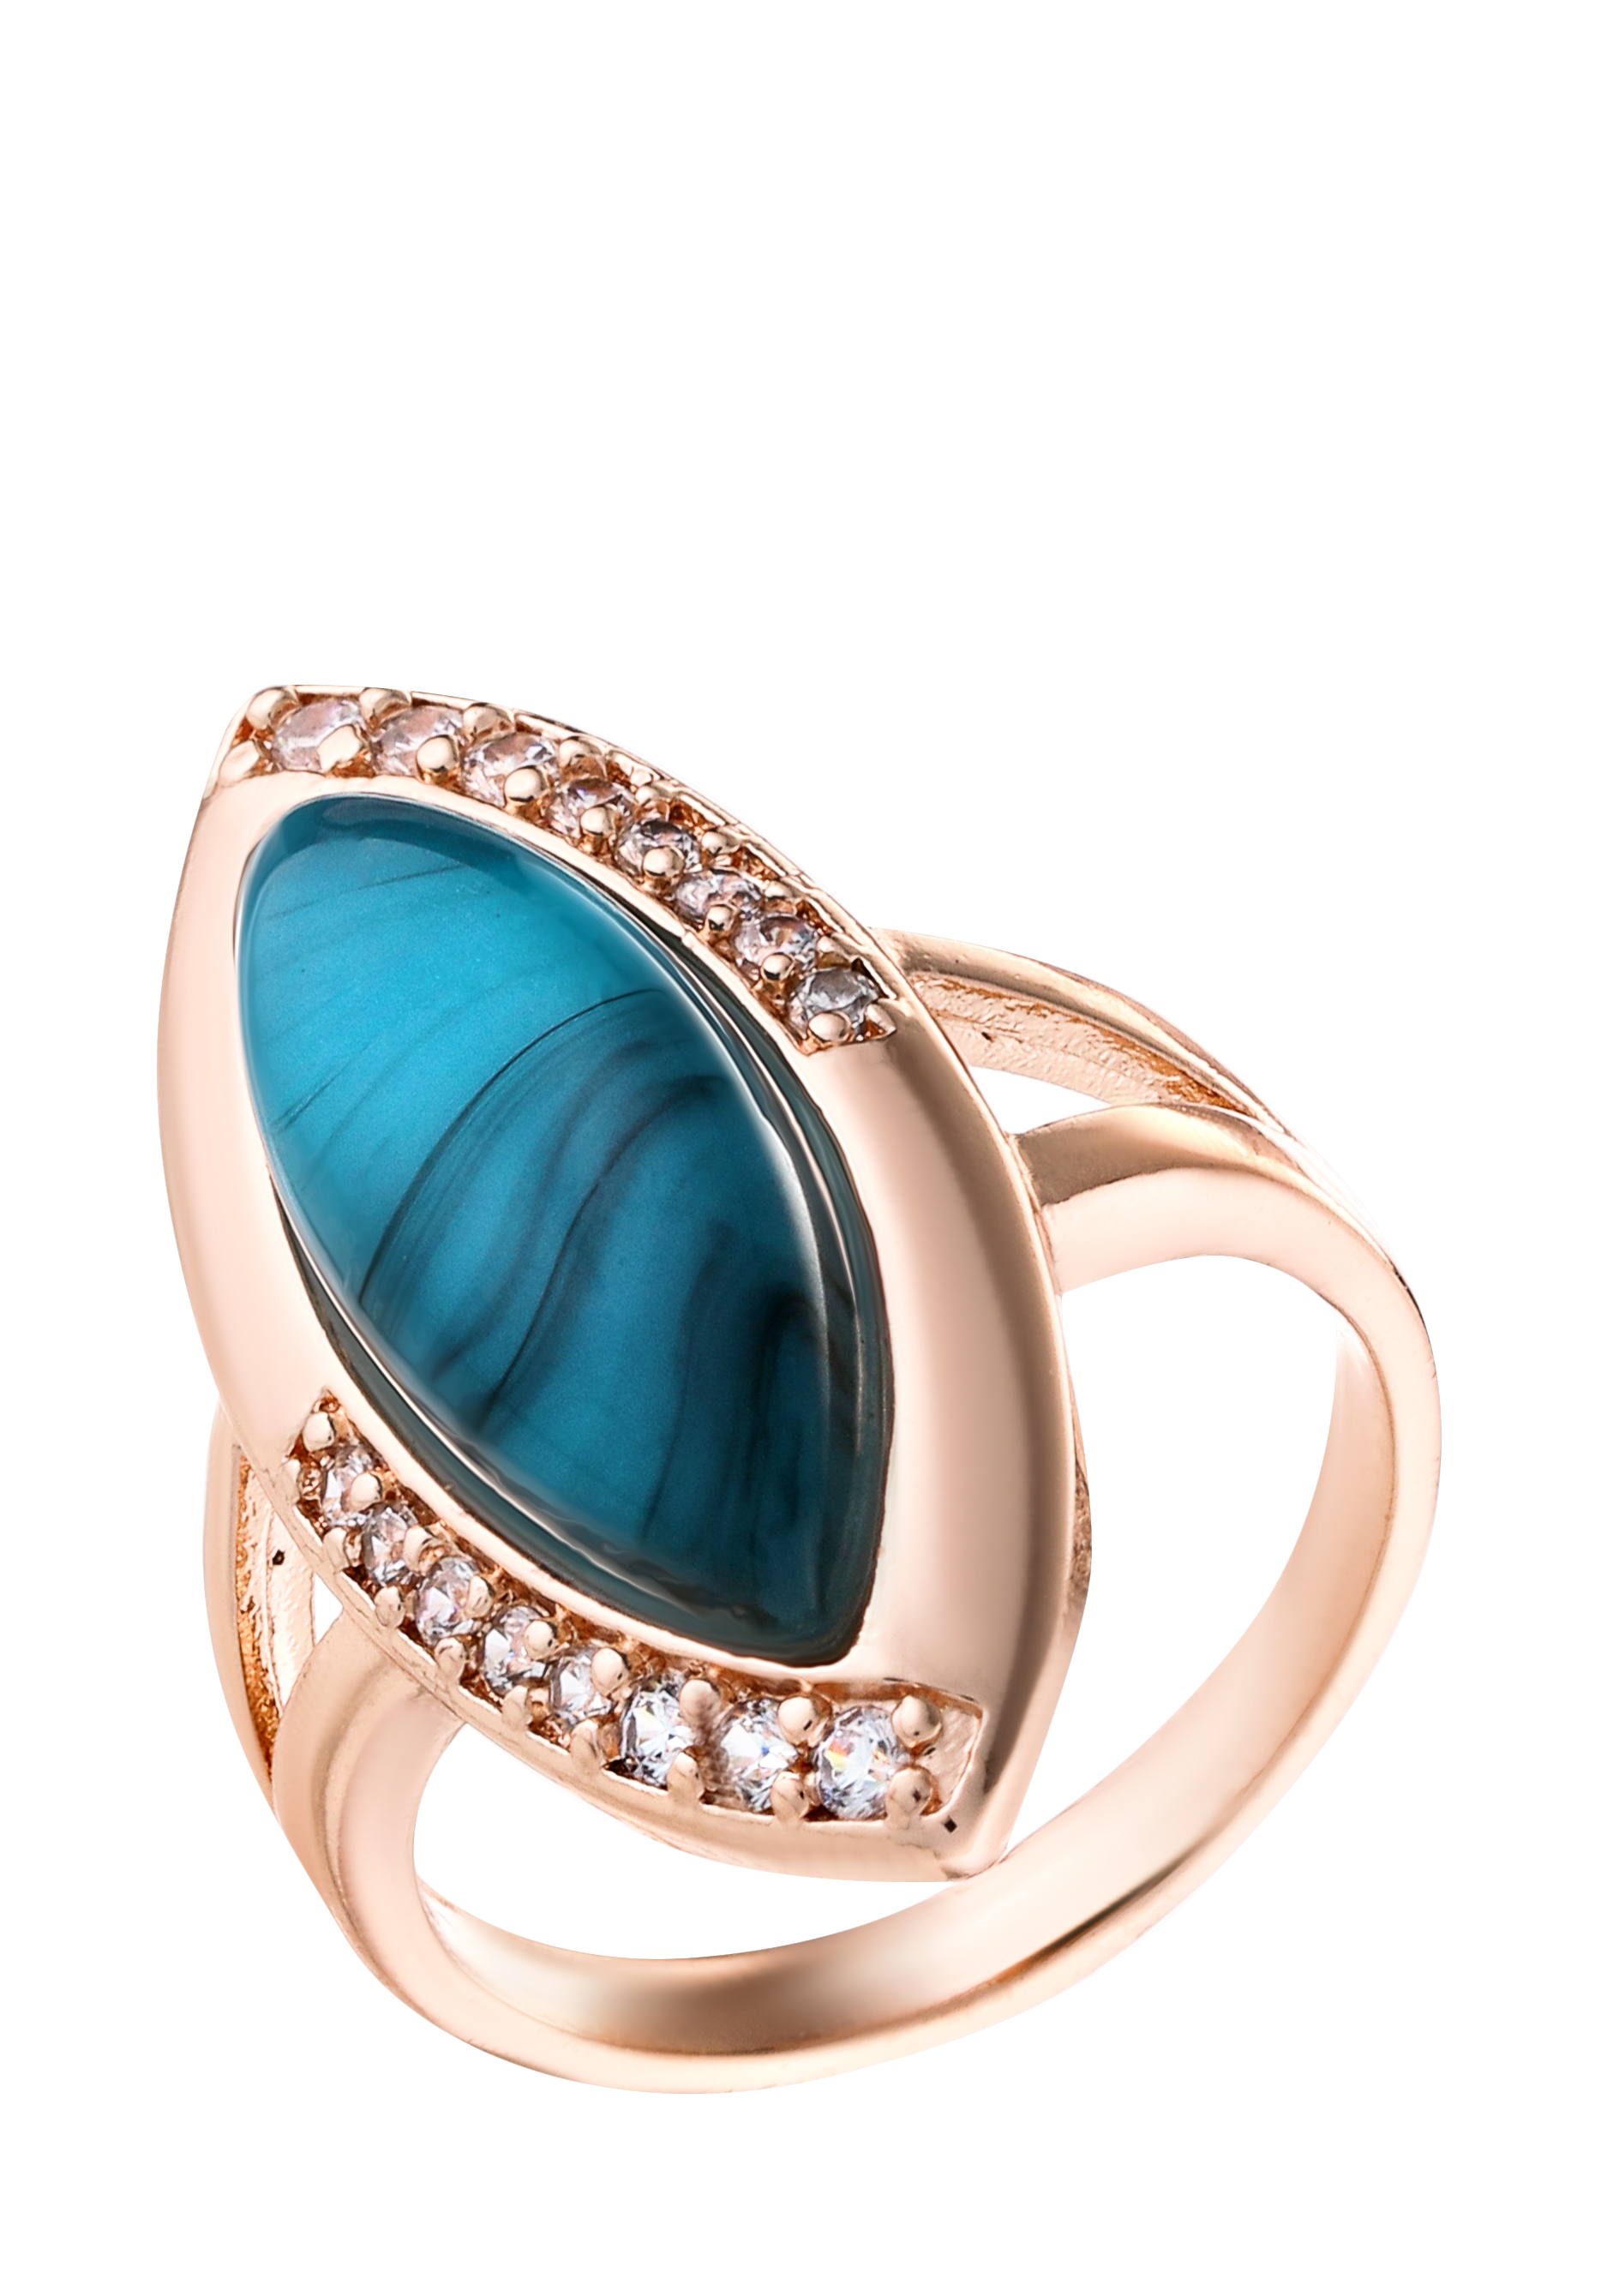 Комплект "Невесомый шлейф" BO.GEMS, цвет голубой, размер 17 перстень - фото 4